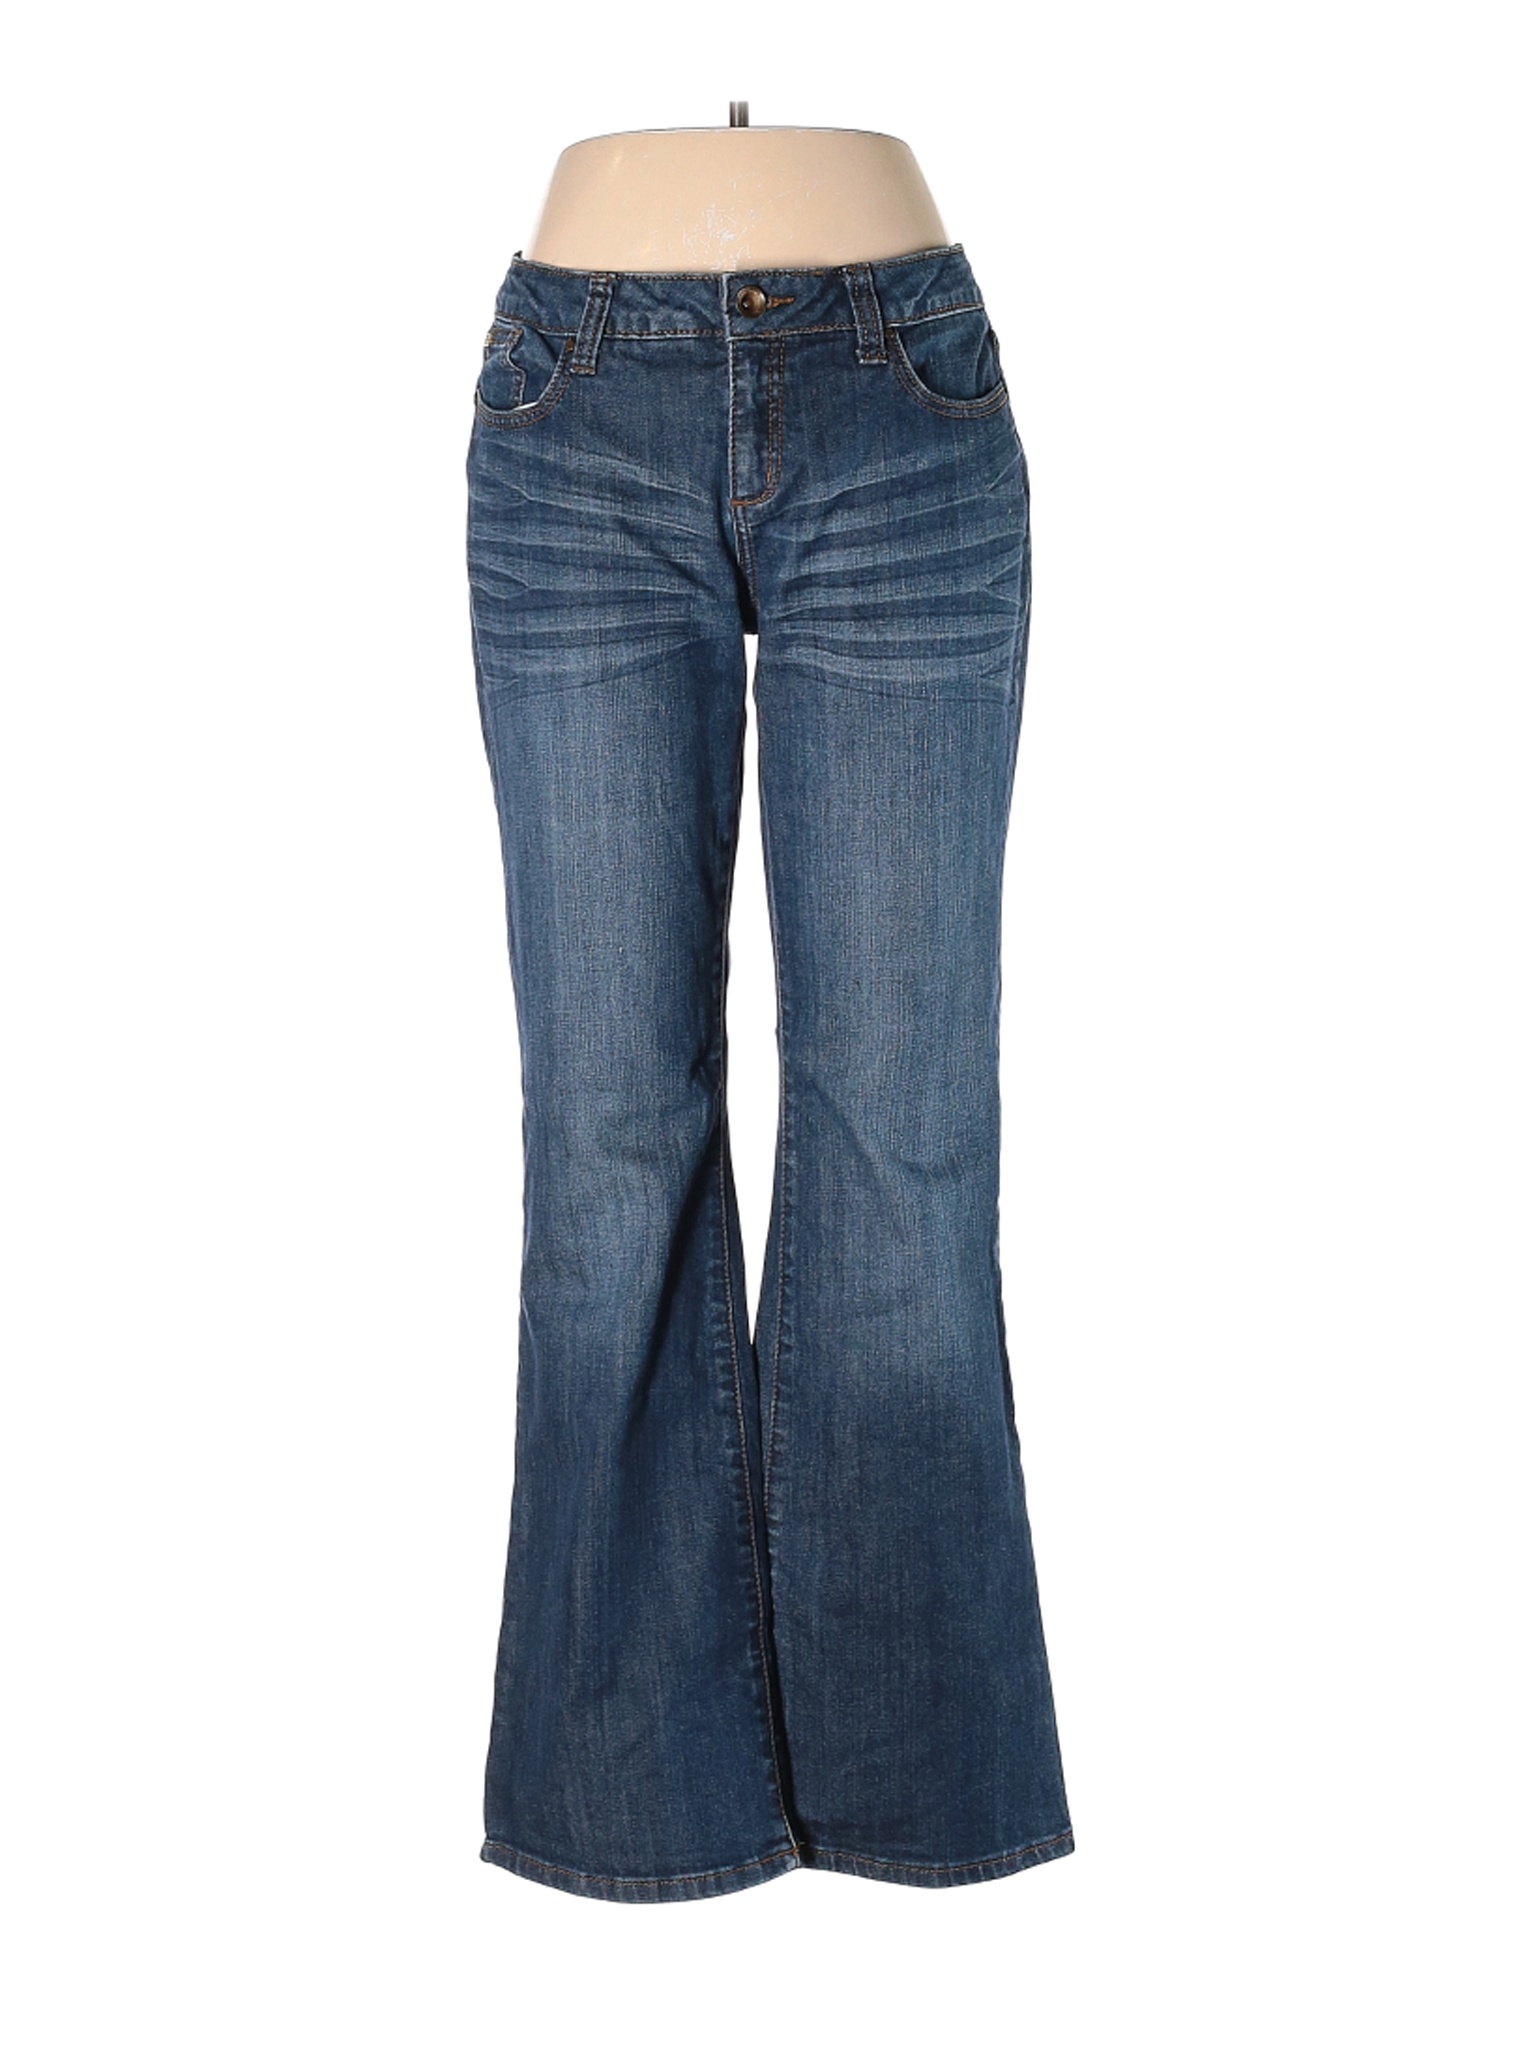 Ruff Hewn Women Blue Jeans 12 | eBay